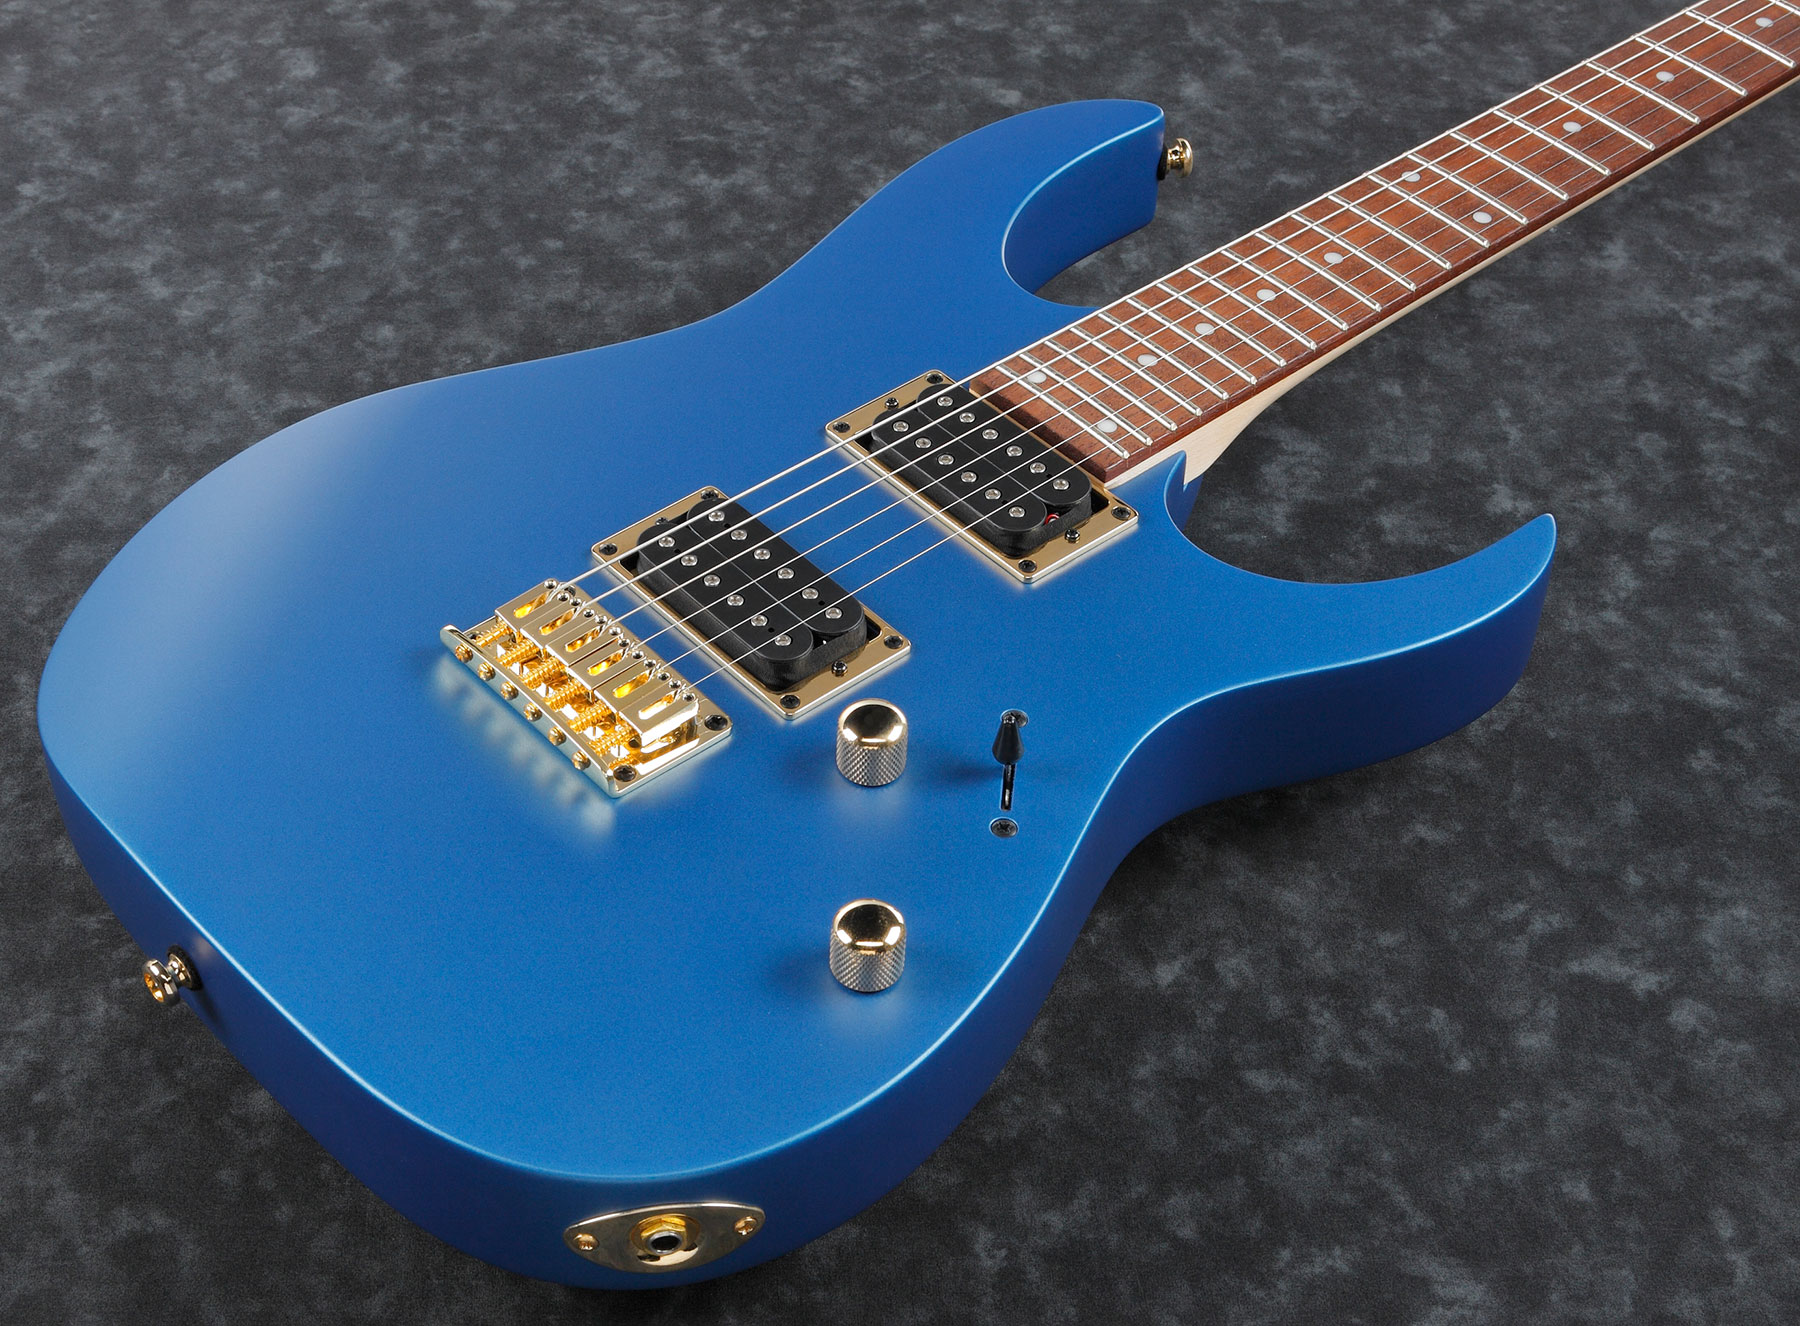 Ibanez Rg421g Lbm Standard Ht Hh Jat - Laser Blue Matte - Guitarra eléctrica con forma de str. - Variation 2